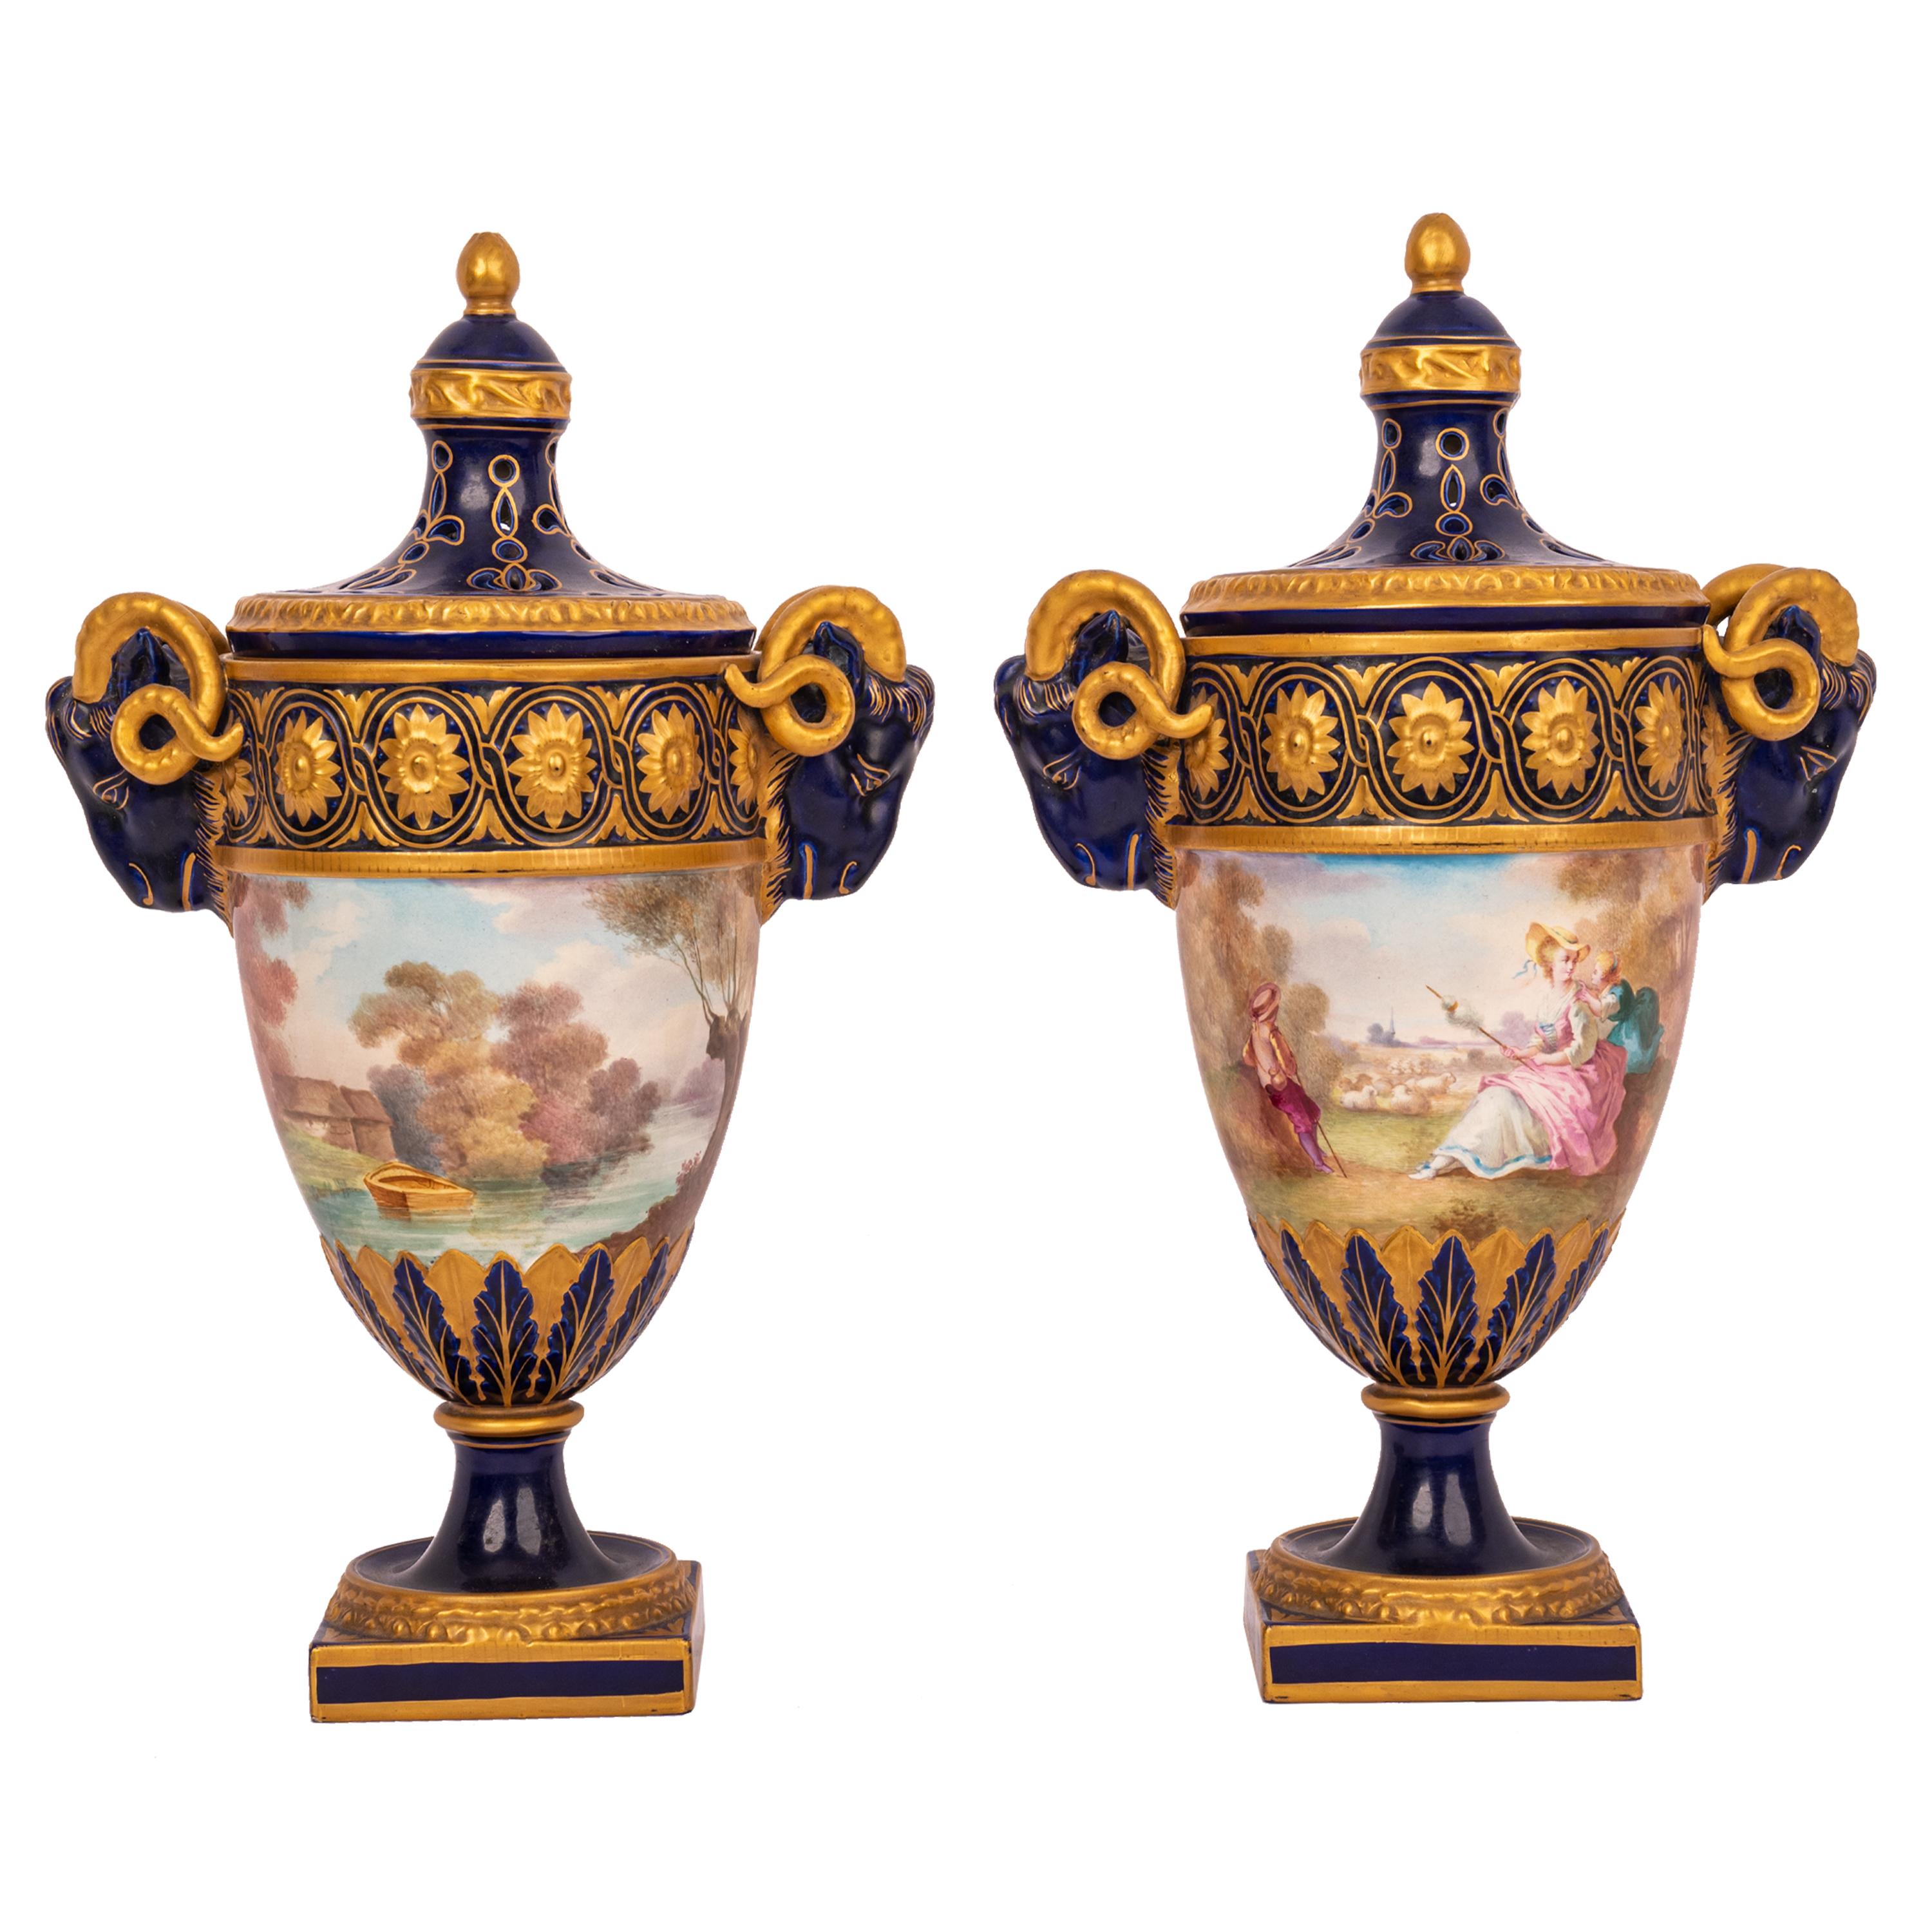 Ein sehr schönes Paar antiker französischer, handbemalter Porzellan-Urnen des 19. Jahrhunderts, Veuve Perrin, Marseille.
Die Urnen wurden zur Aufnahme von duftendem Potpourri entworfen. Jeder Deckel ist mit einem vergoldeten eichelförmigen Abschluss